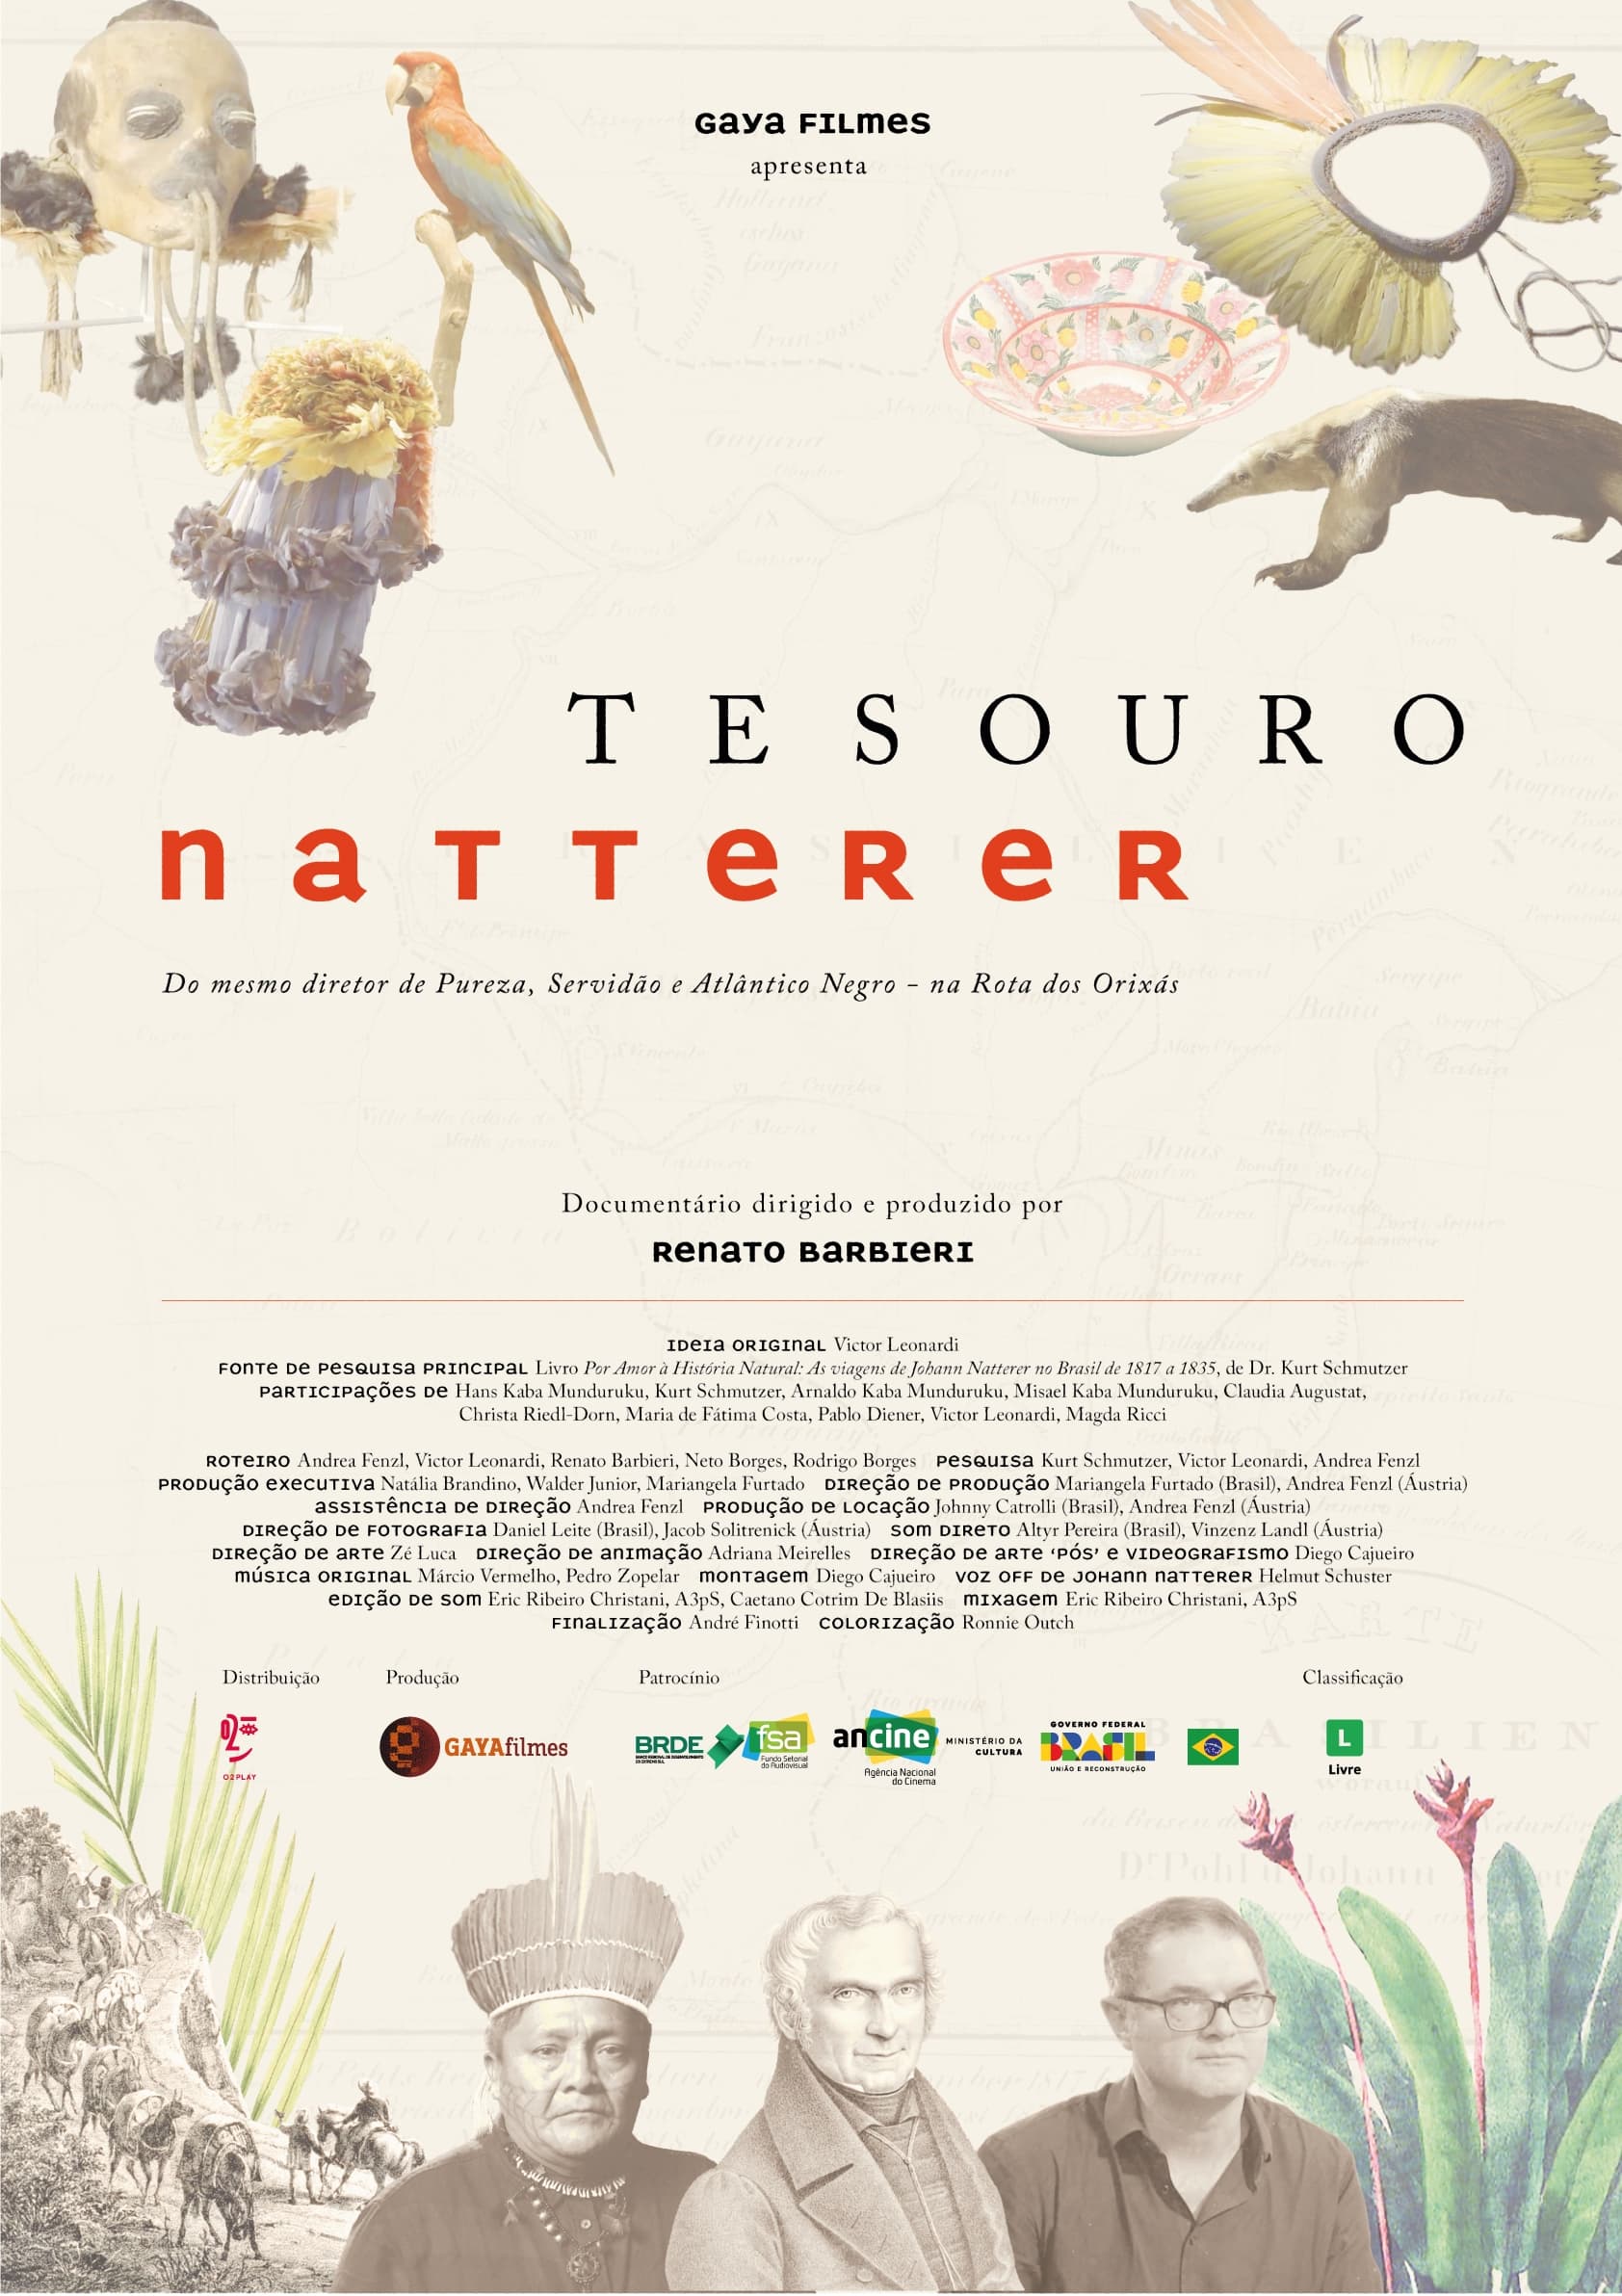 Tesouro Natterer film